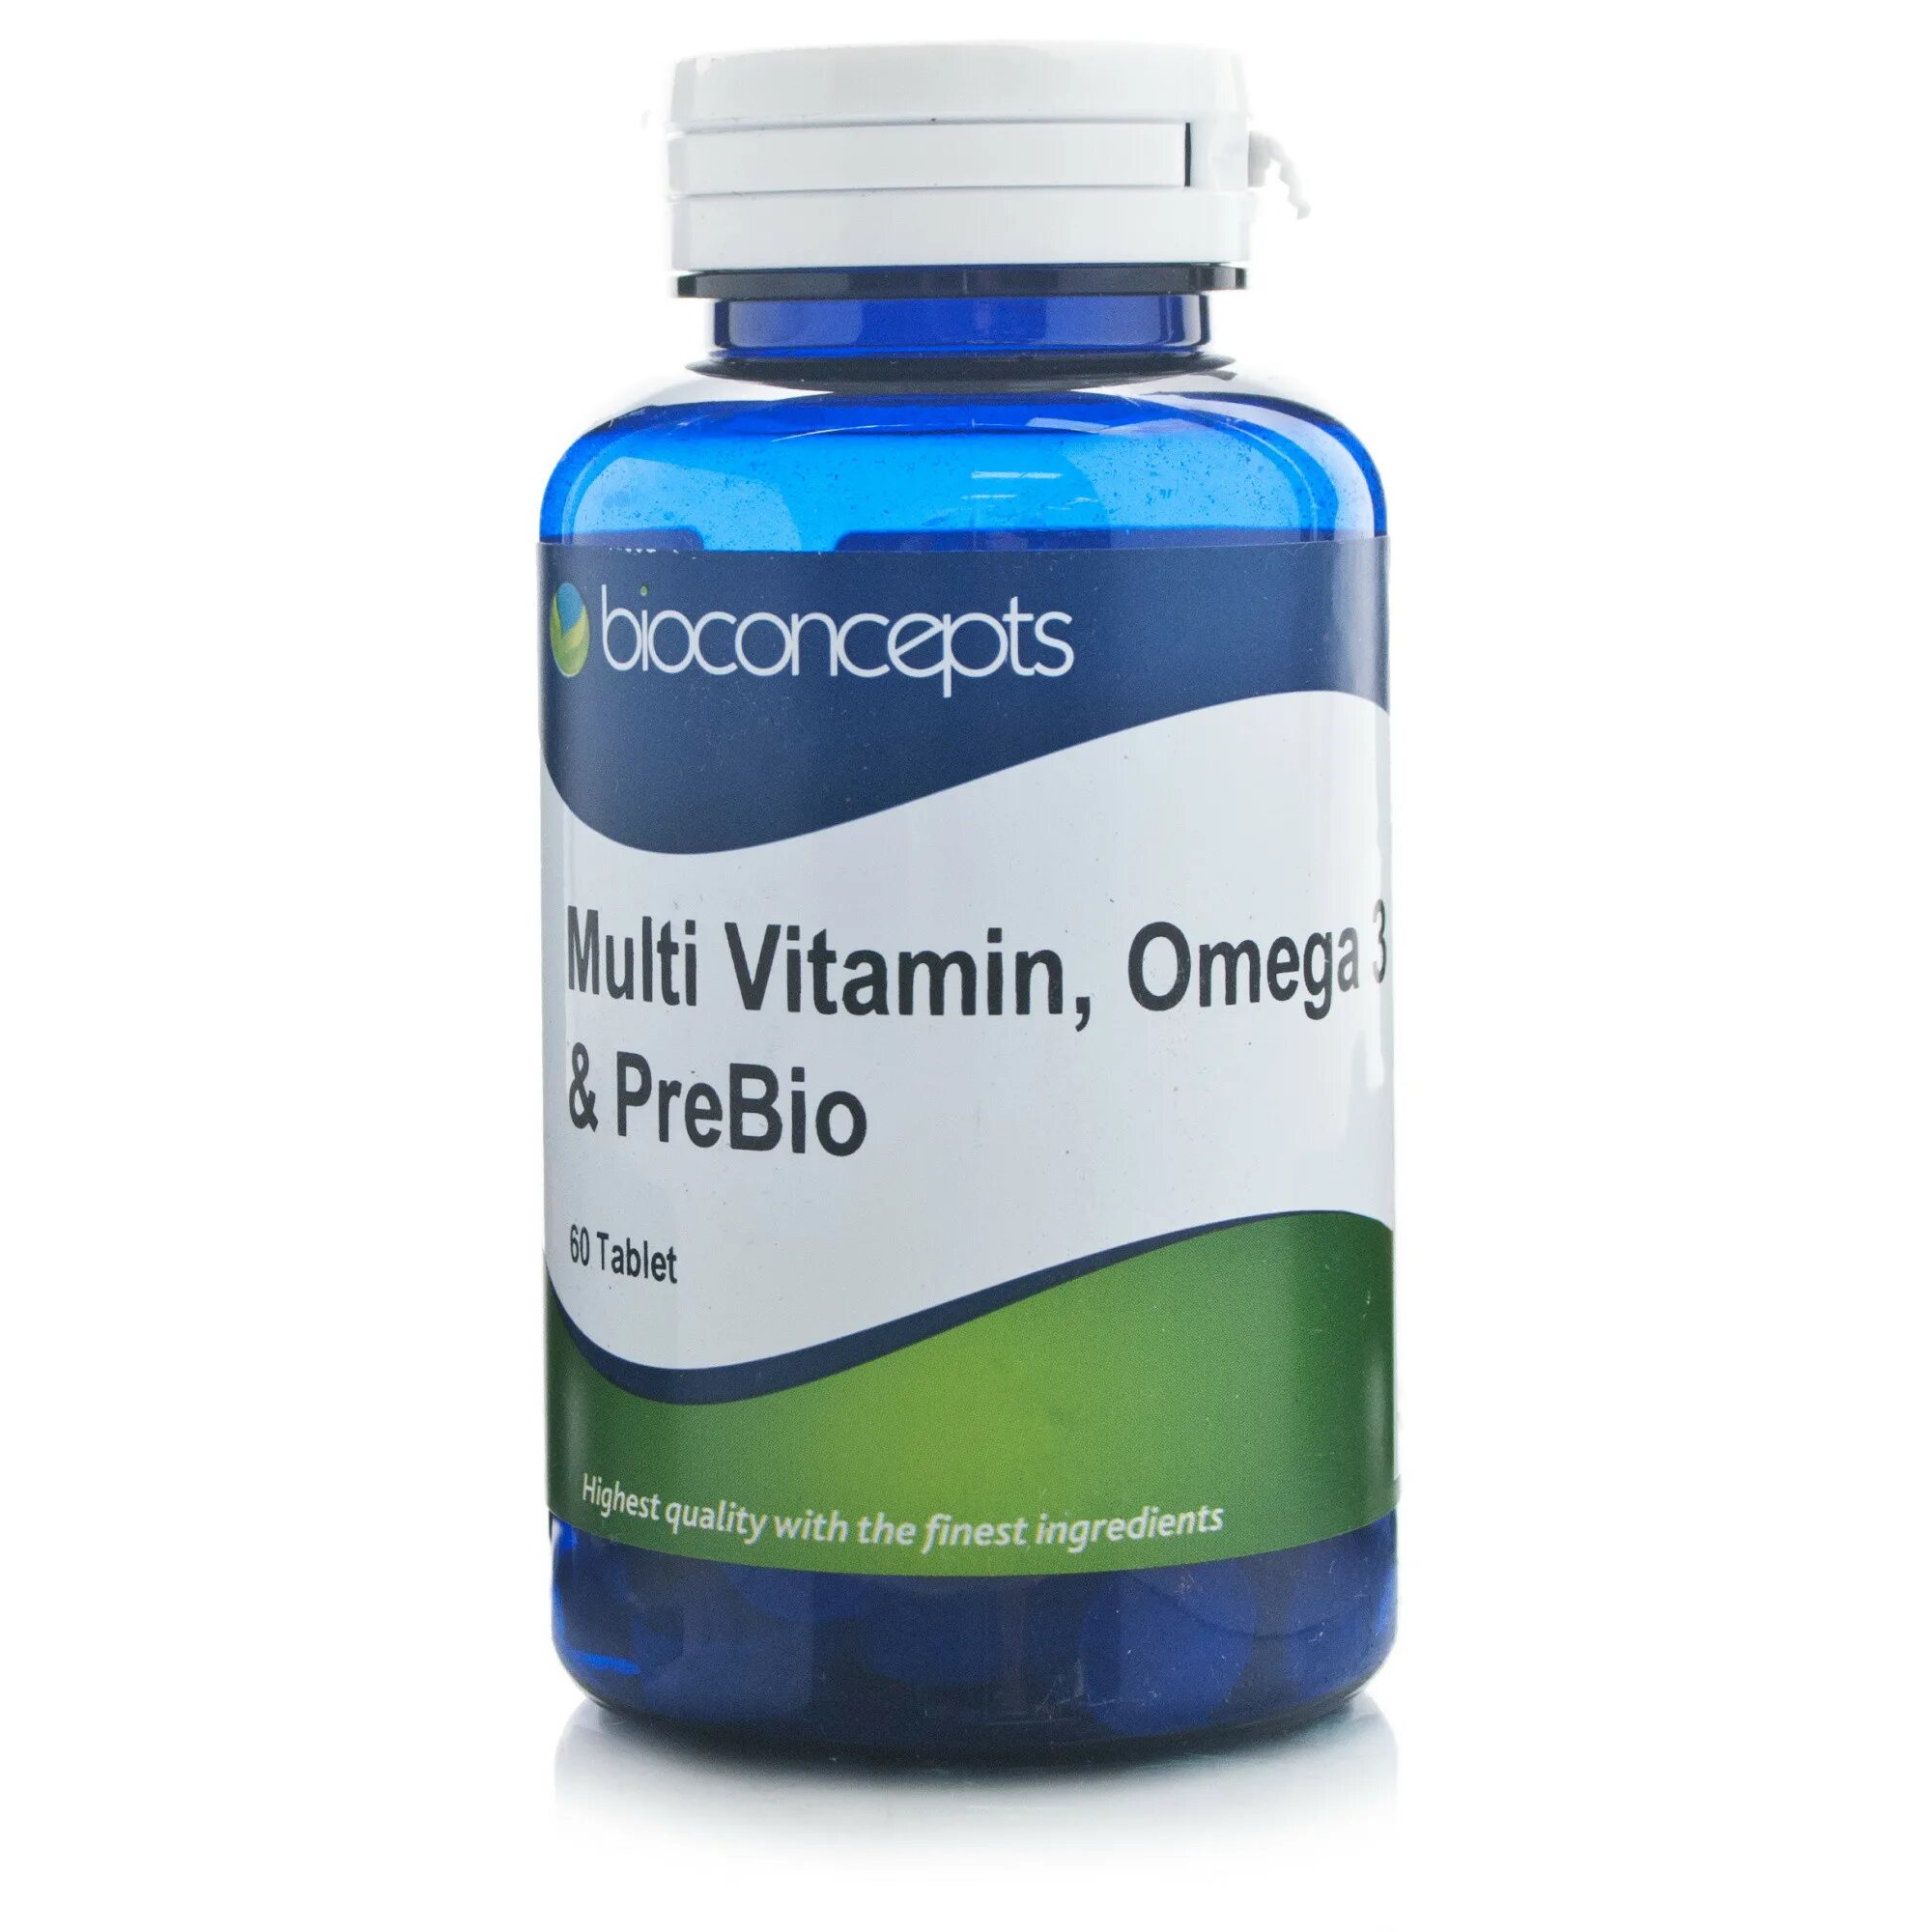 Омега 6 витамины. Multivitamin Omega 3. Dam Omega-3 Multi Vitamin. Жевательные таблетки Омега 3.